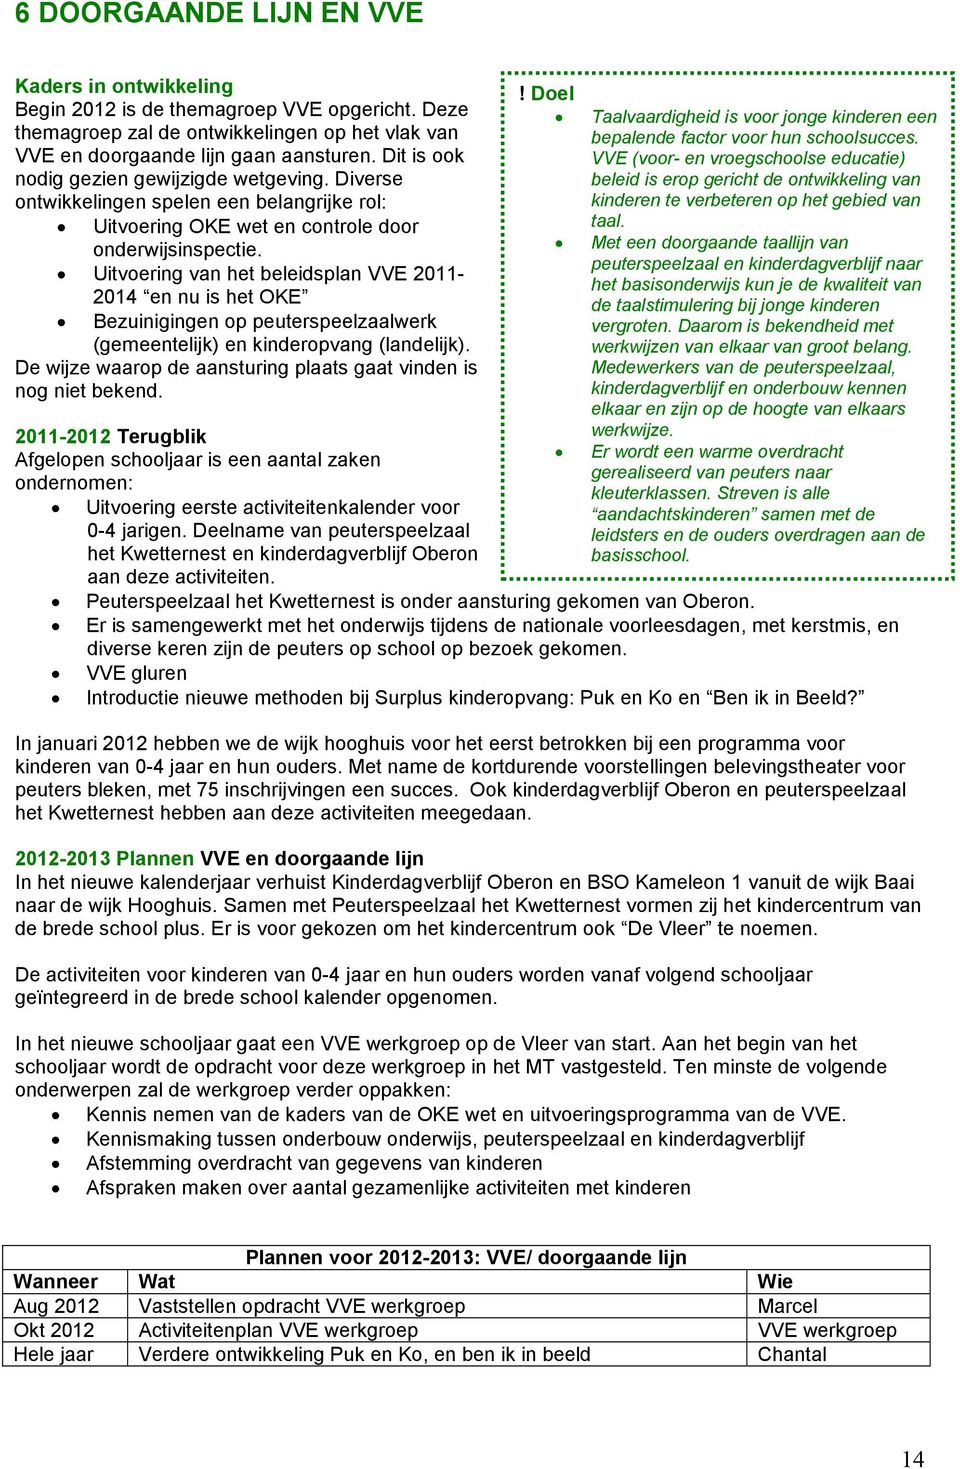 Uitvoering van het beleidsplan VVE 2011-2014 en nu is het OKE Bezuinigingen op peuterspeelzaalwerk (gemeentelijk) en kinderopvang (landelijk).